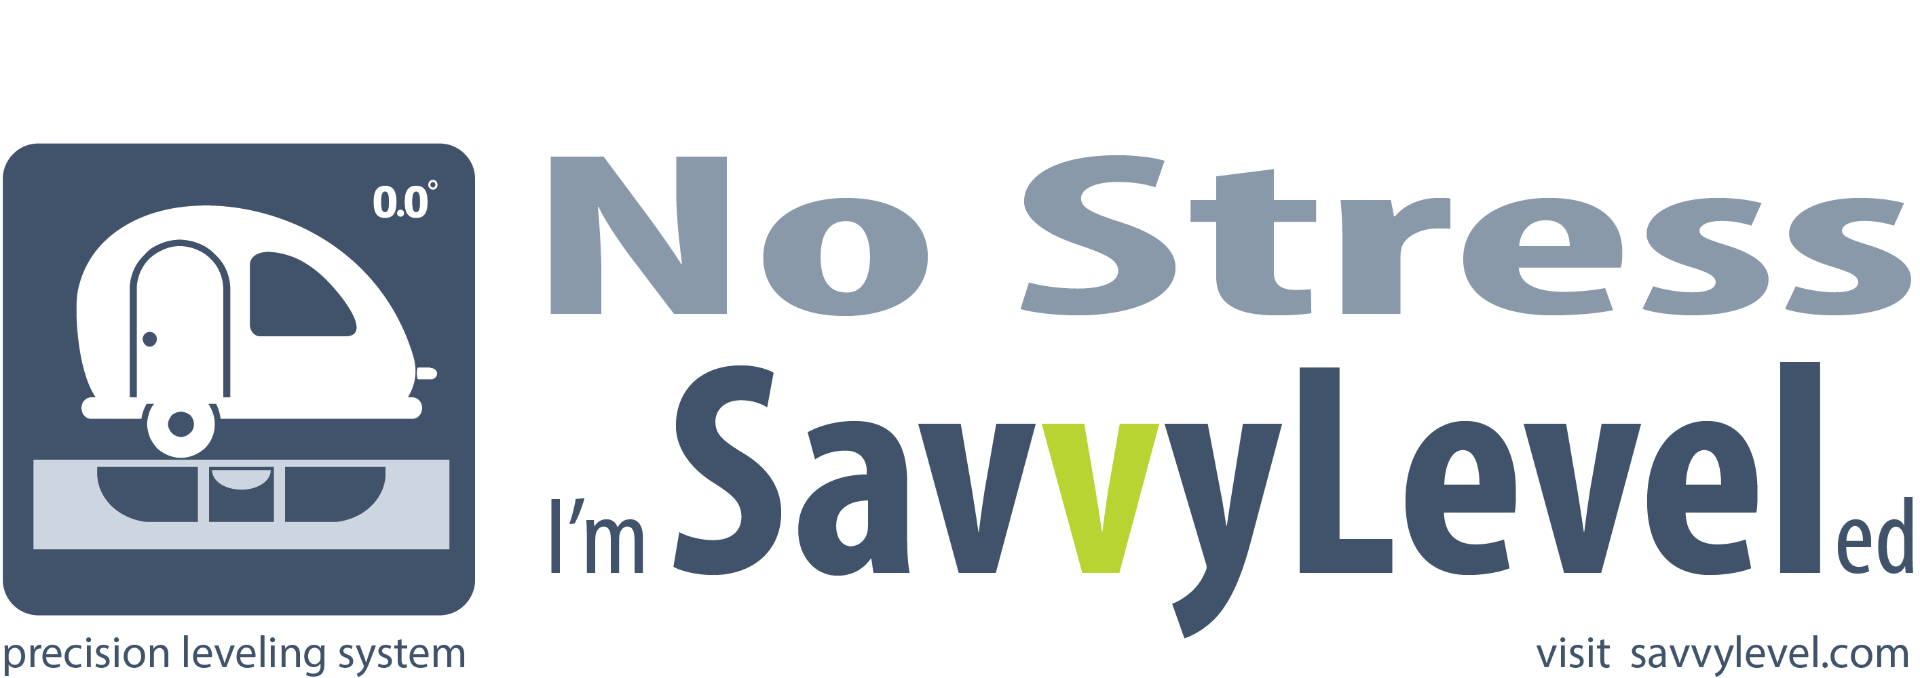 SavvyLevel logo